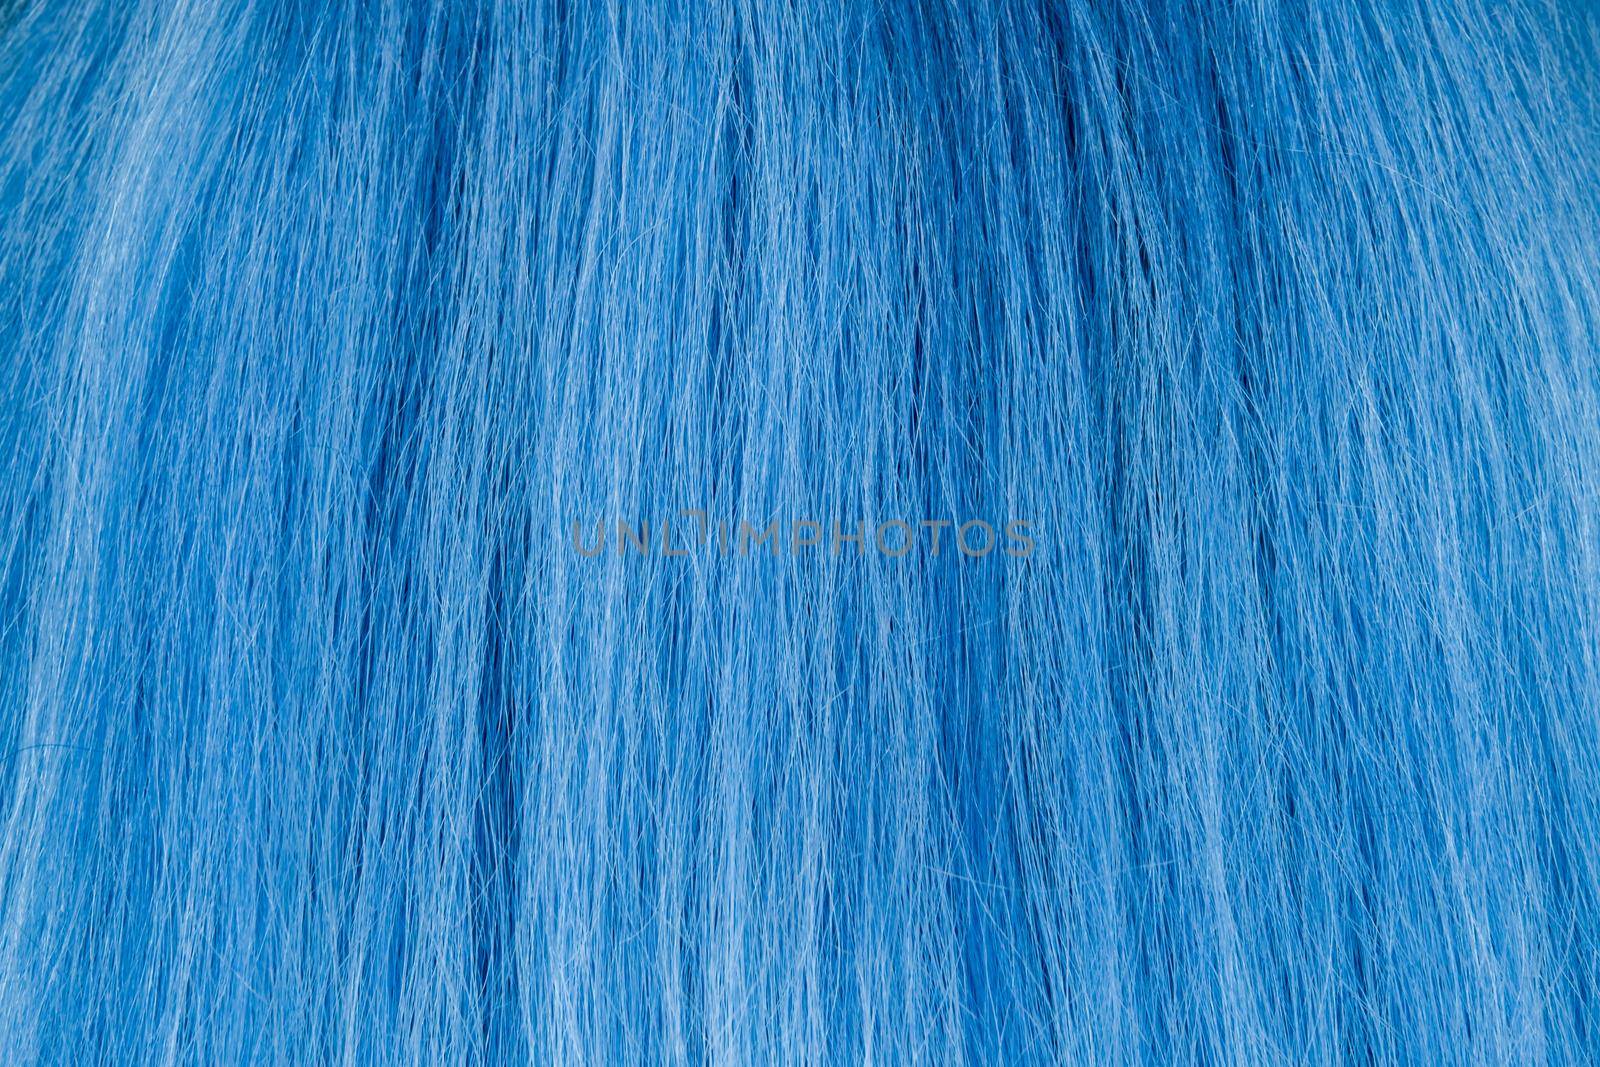 Blue Hair Texture, close view